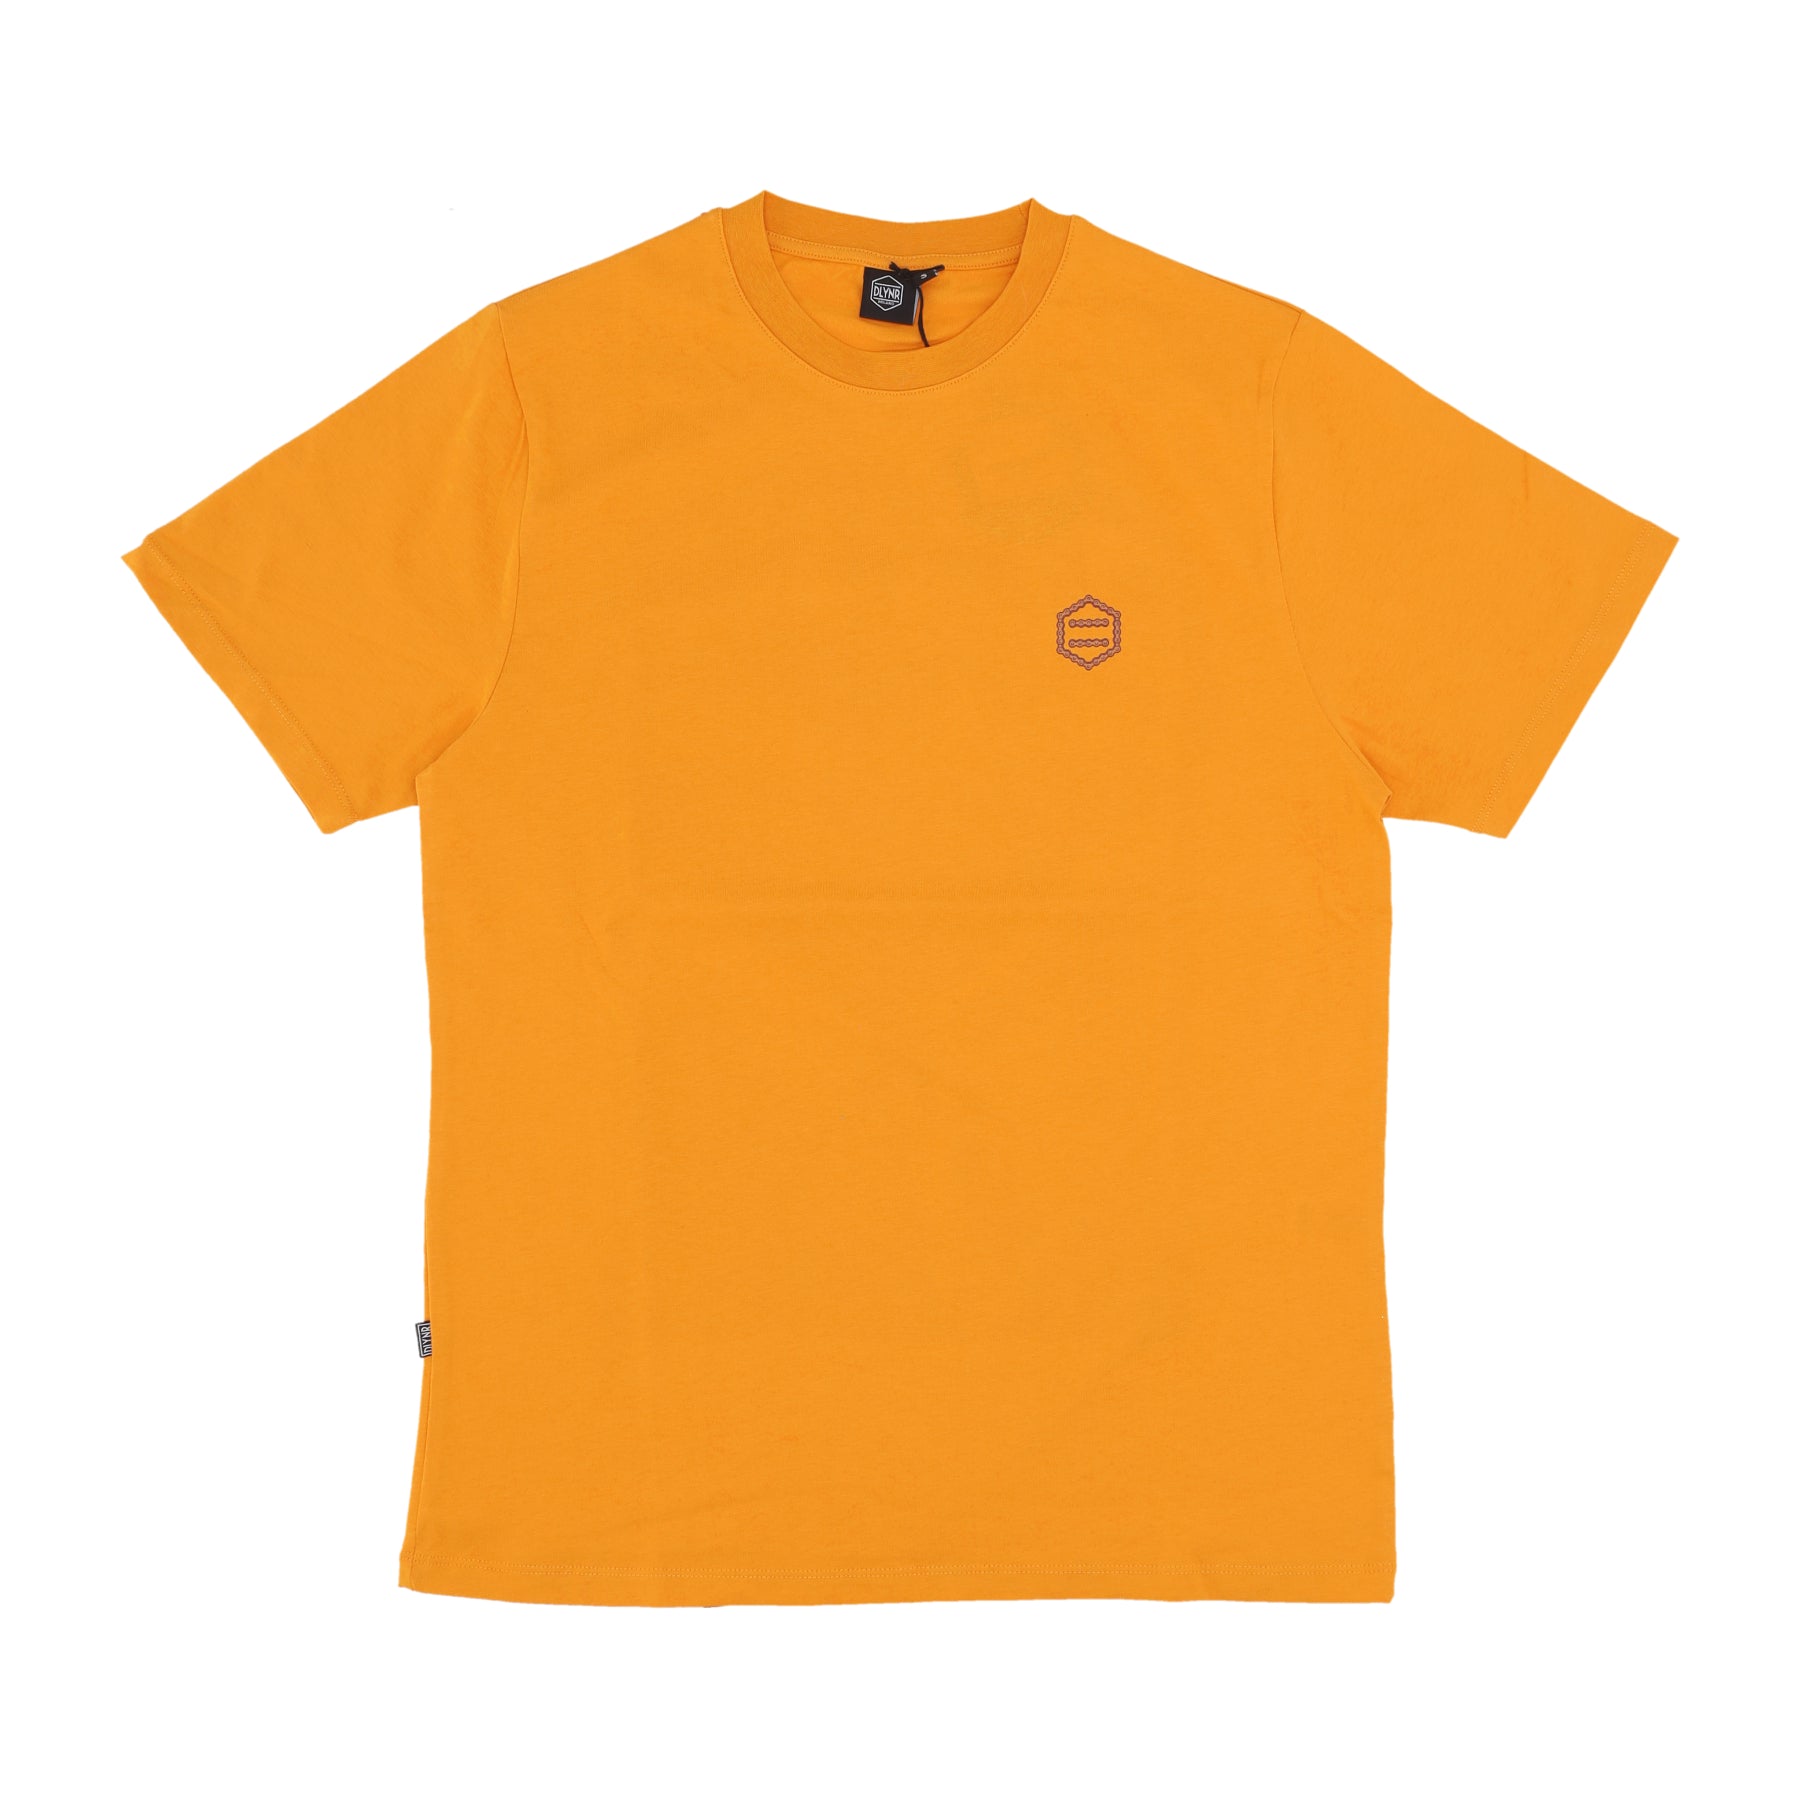 Maglietta Uomo Downhill Pov Tee Orange TS699-TT-04